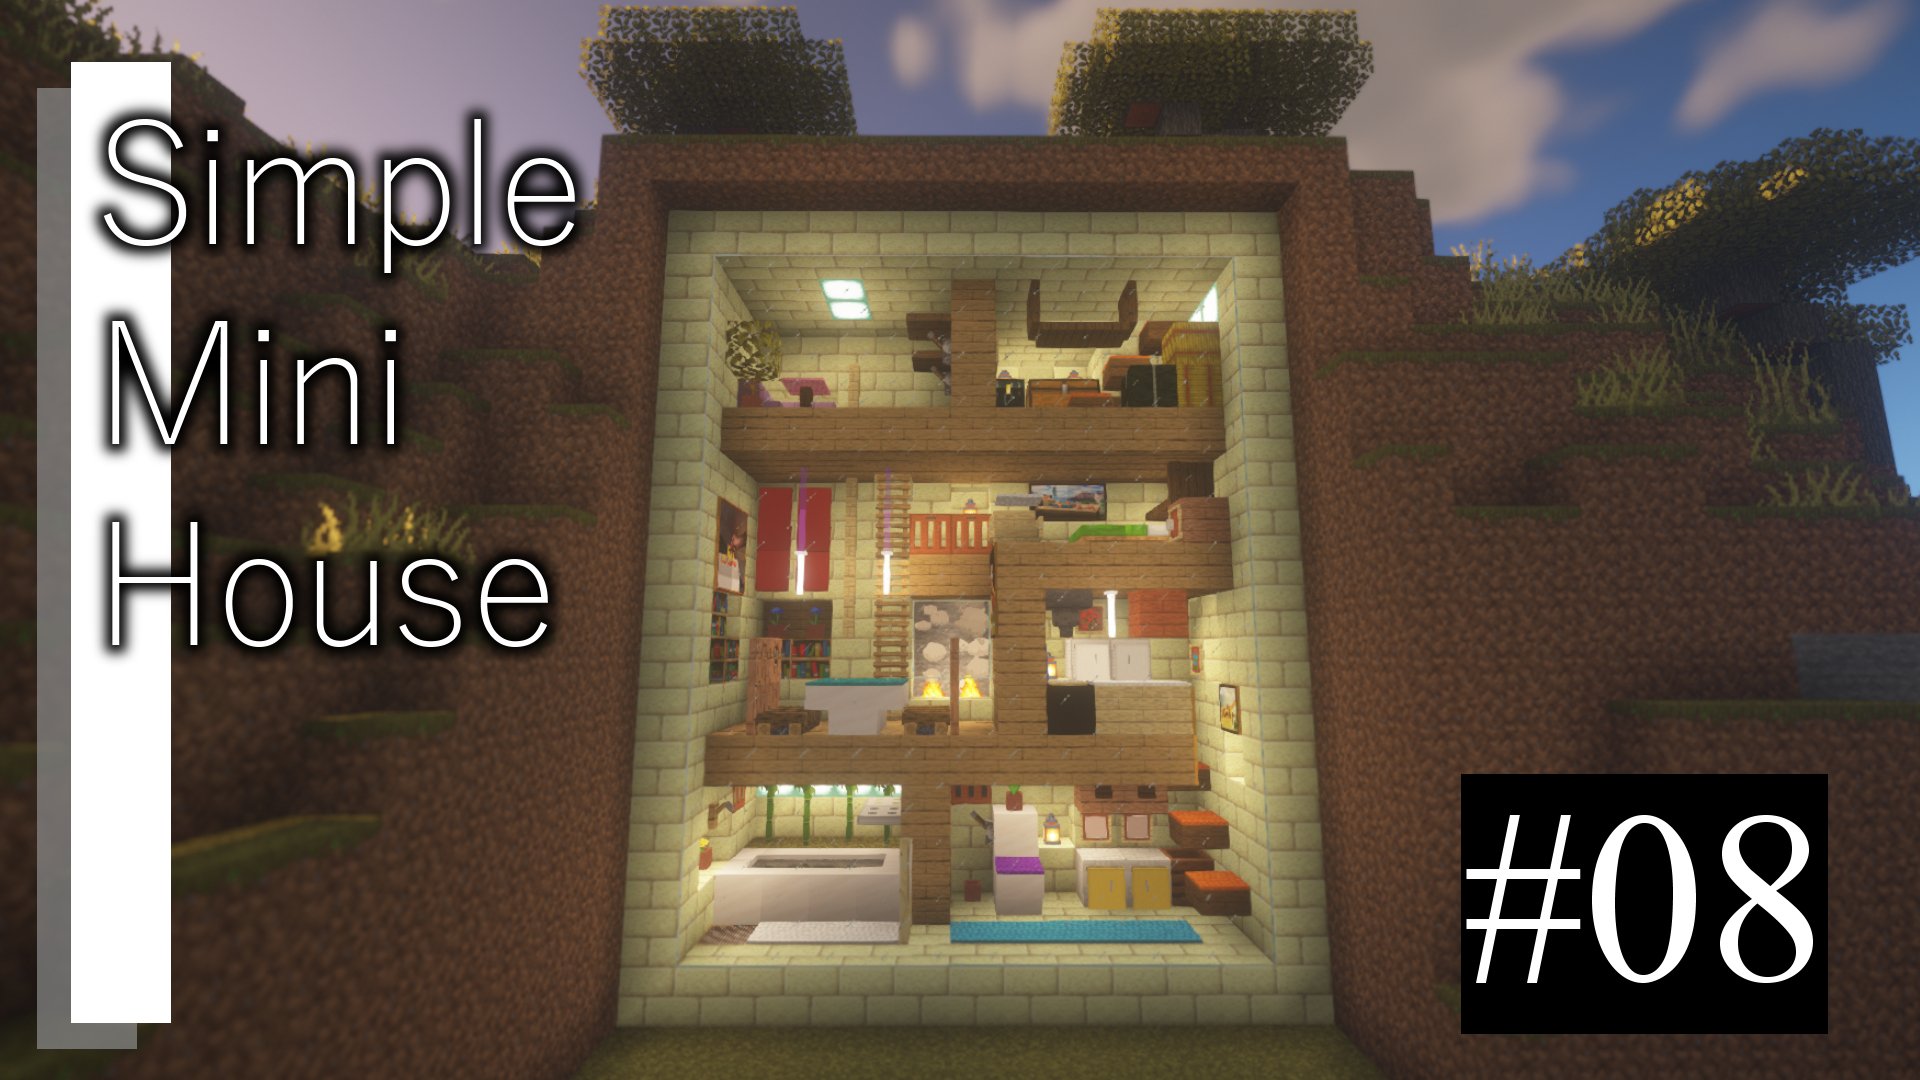 Twitter 上的 Asley Rec その名の通り マイクラで即席で作ったちょっとおしゃれでシンプルな小さい家の探訪です 動画的にも非常にシンプルです 笑 第8回 T Co P3nzvghc9s マイクラ Minecraft マインクラフト モダン Build House Design Modern